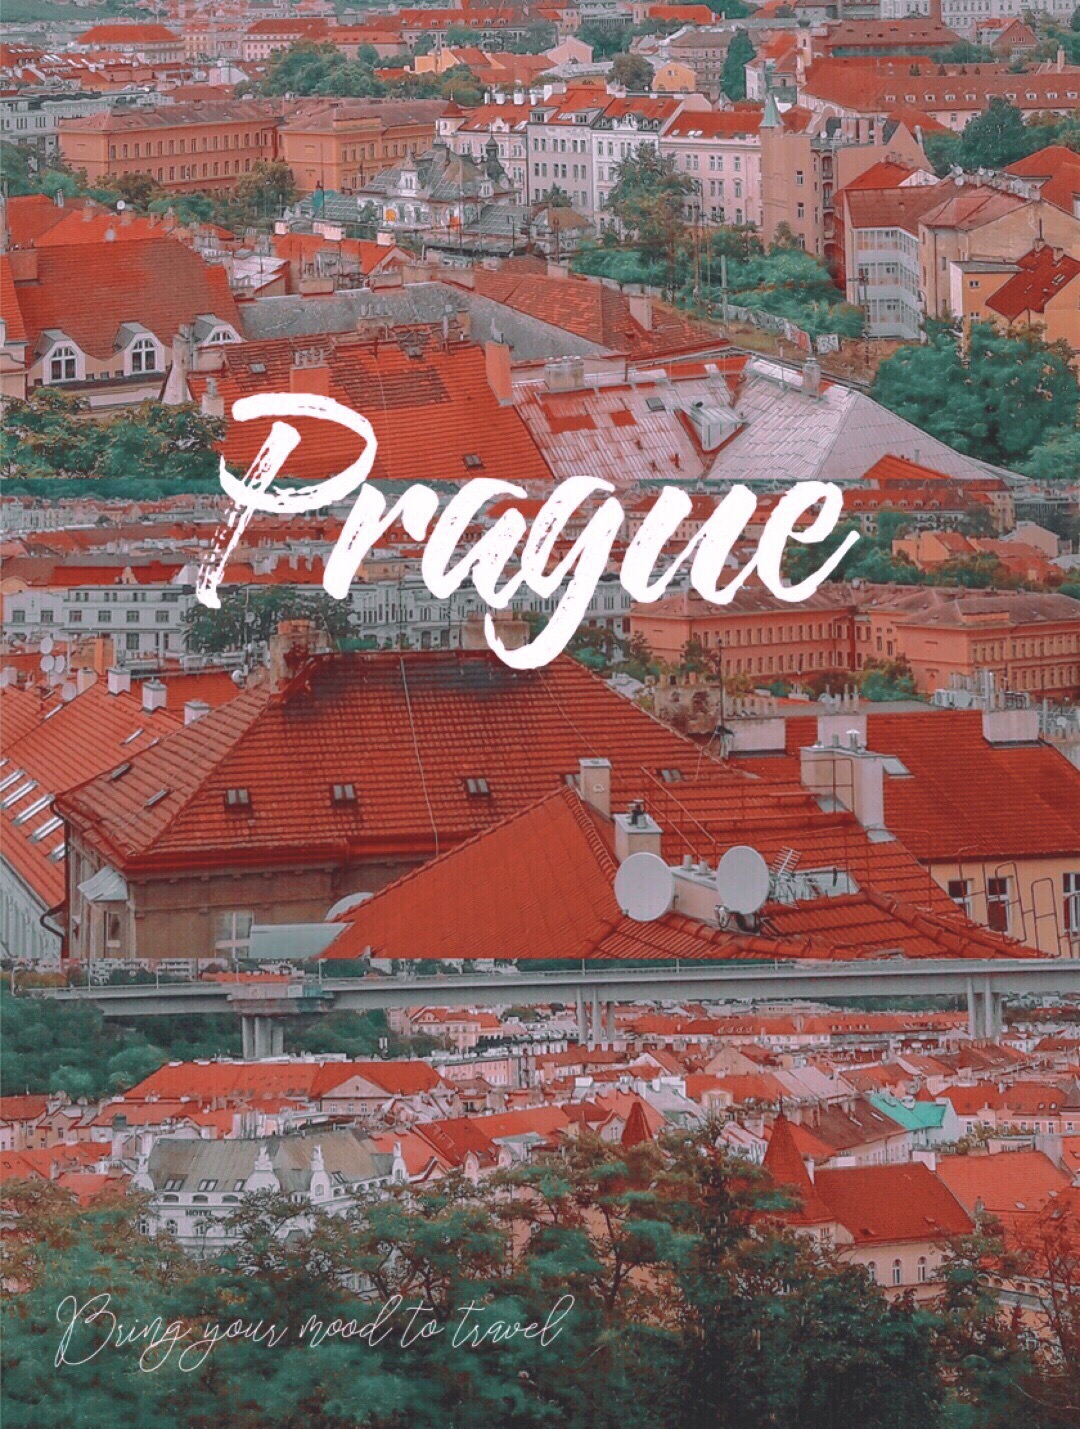 捷克旅行 | 布拉格周边居然有这么美丽的小镇  🌞小镇名称：Kutná Hora Village 🔛